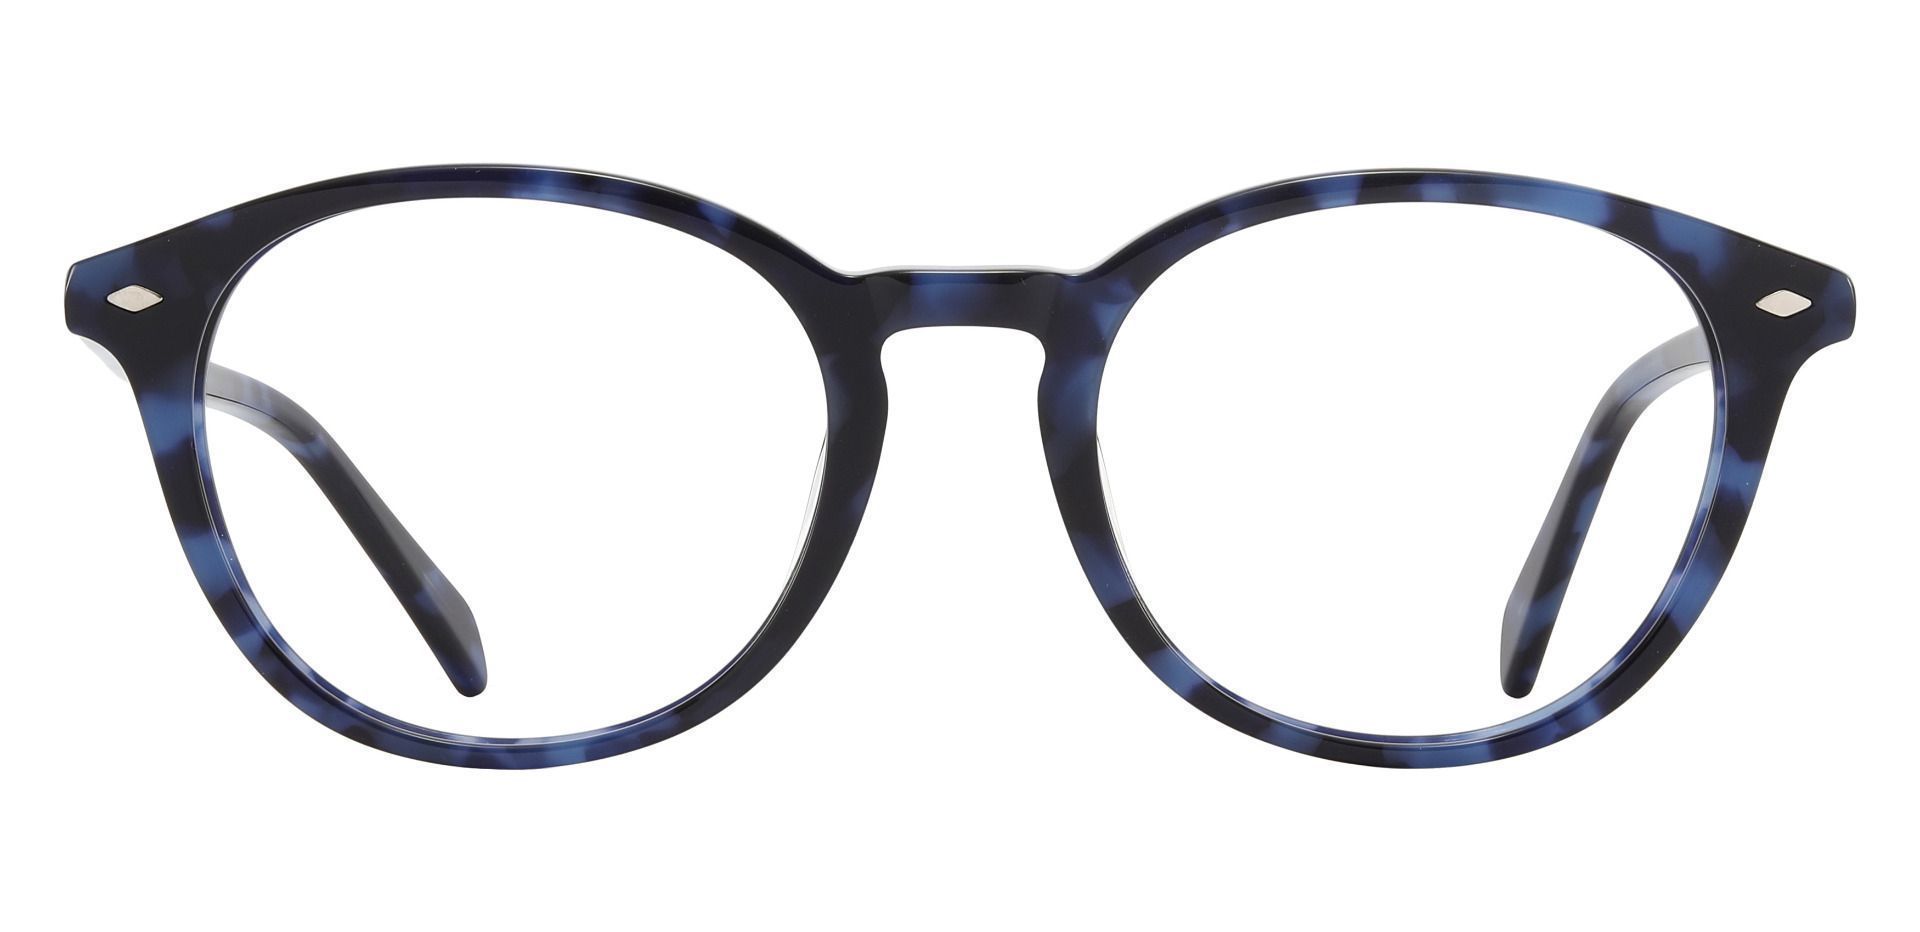 Cove Oval Prescription Glasses - Blue